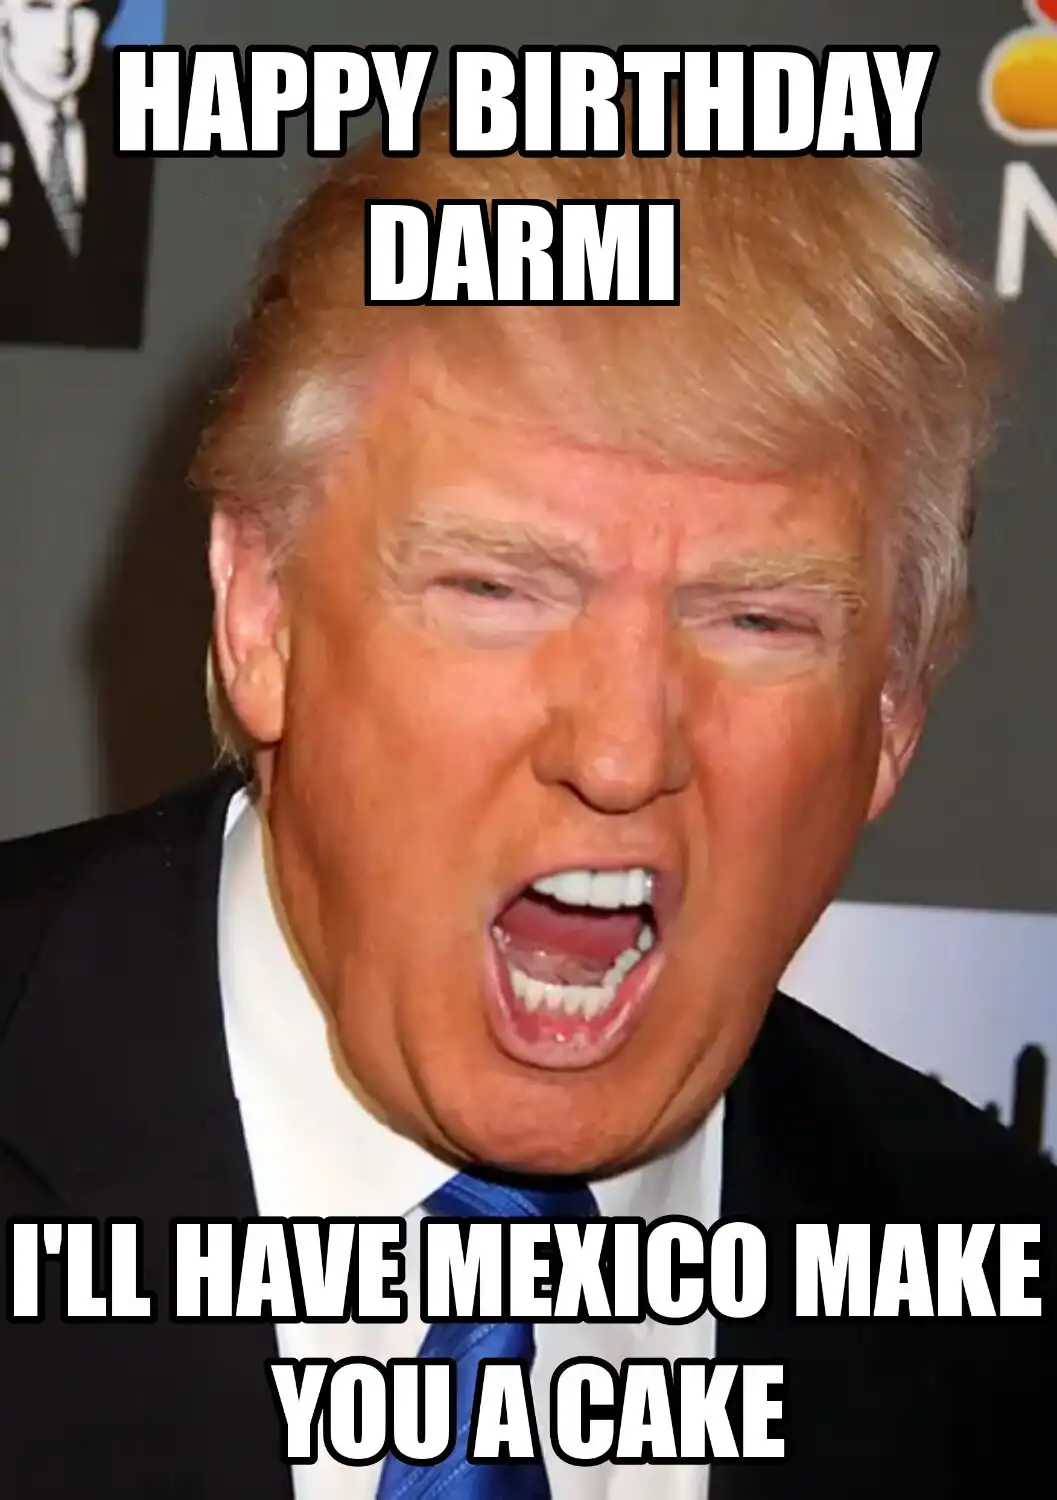 Happy Birthday Darmi Mexico Make You A Cake Meme